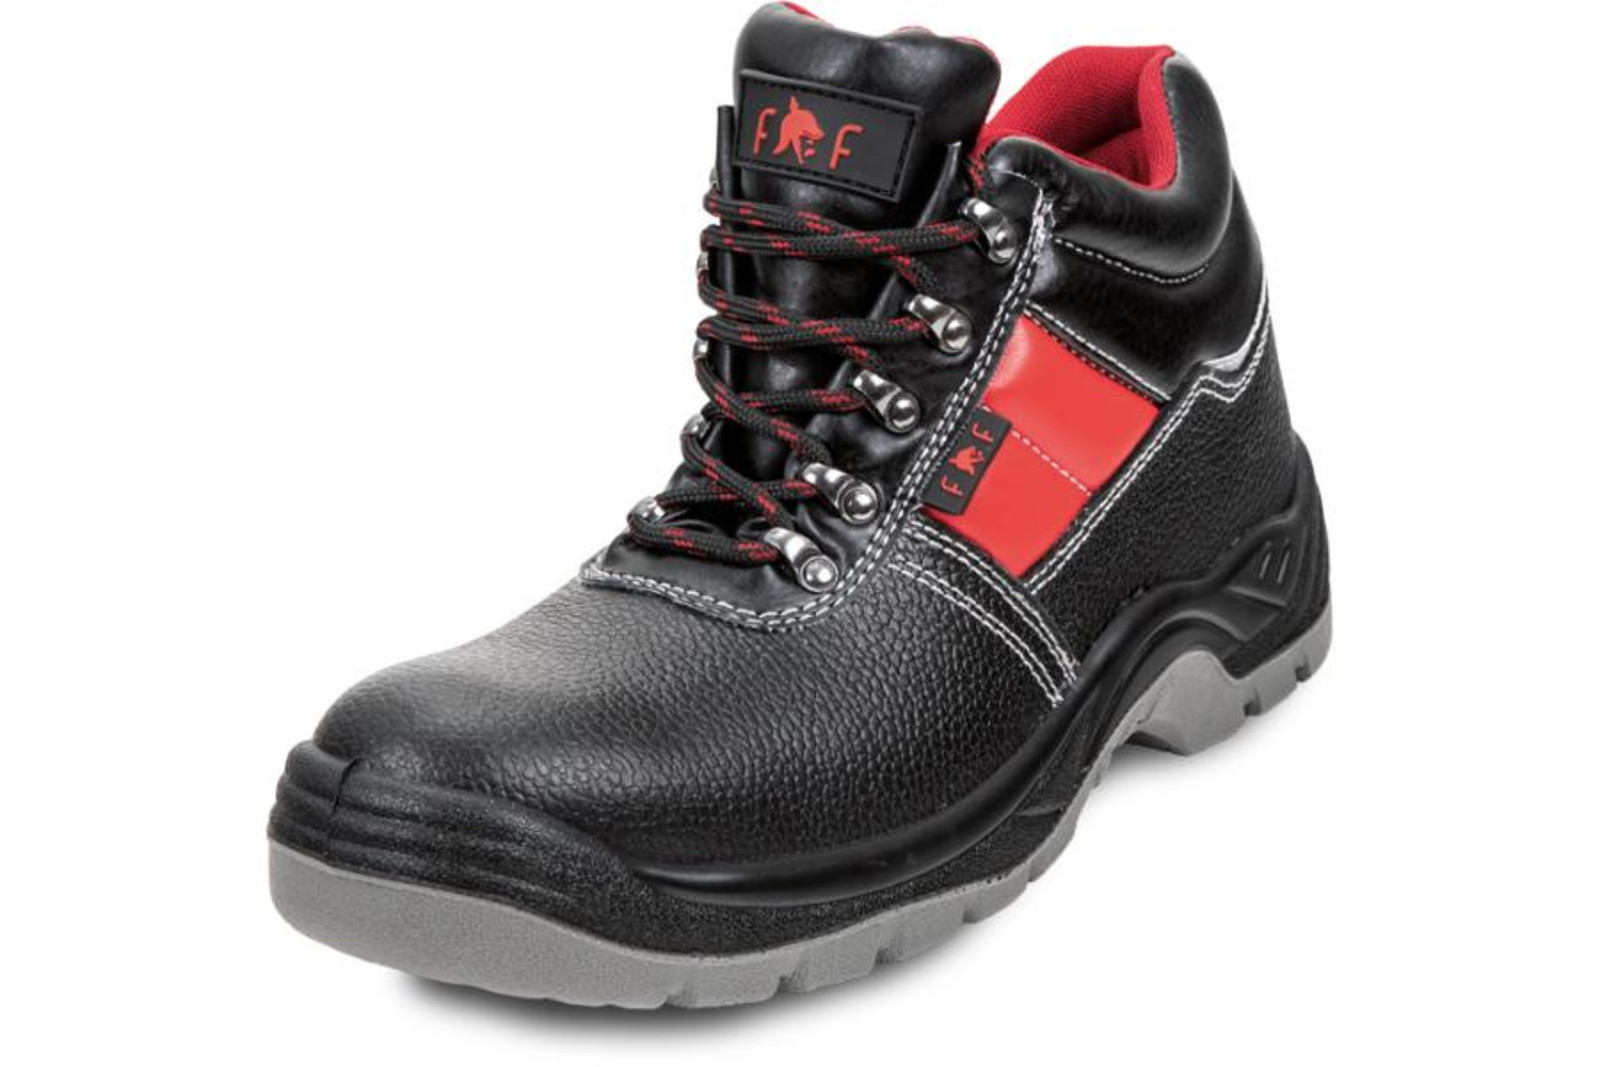 Bezpečnostná obuv SC 03-003 S3 - veľkosť: 40, farba: čierna